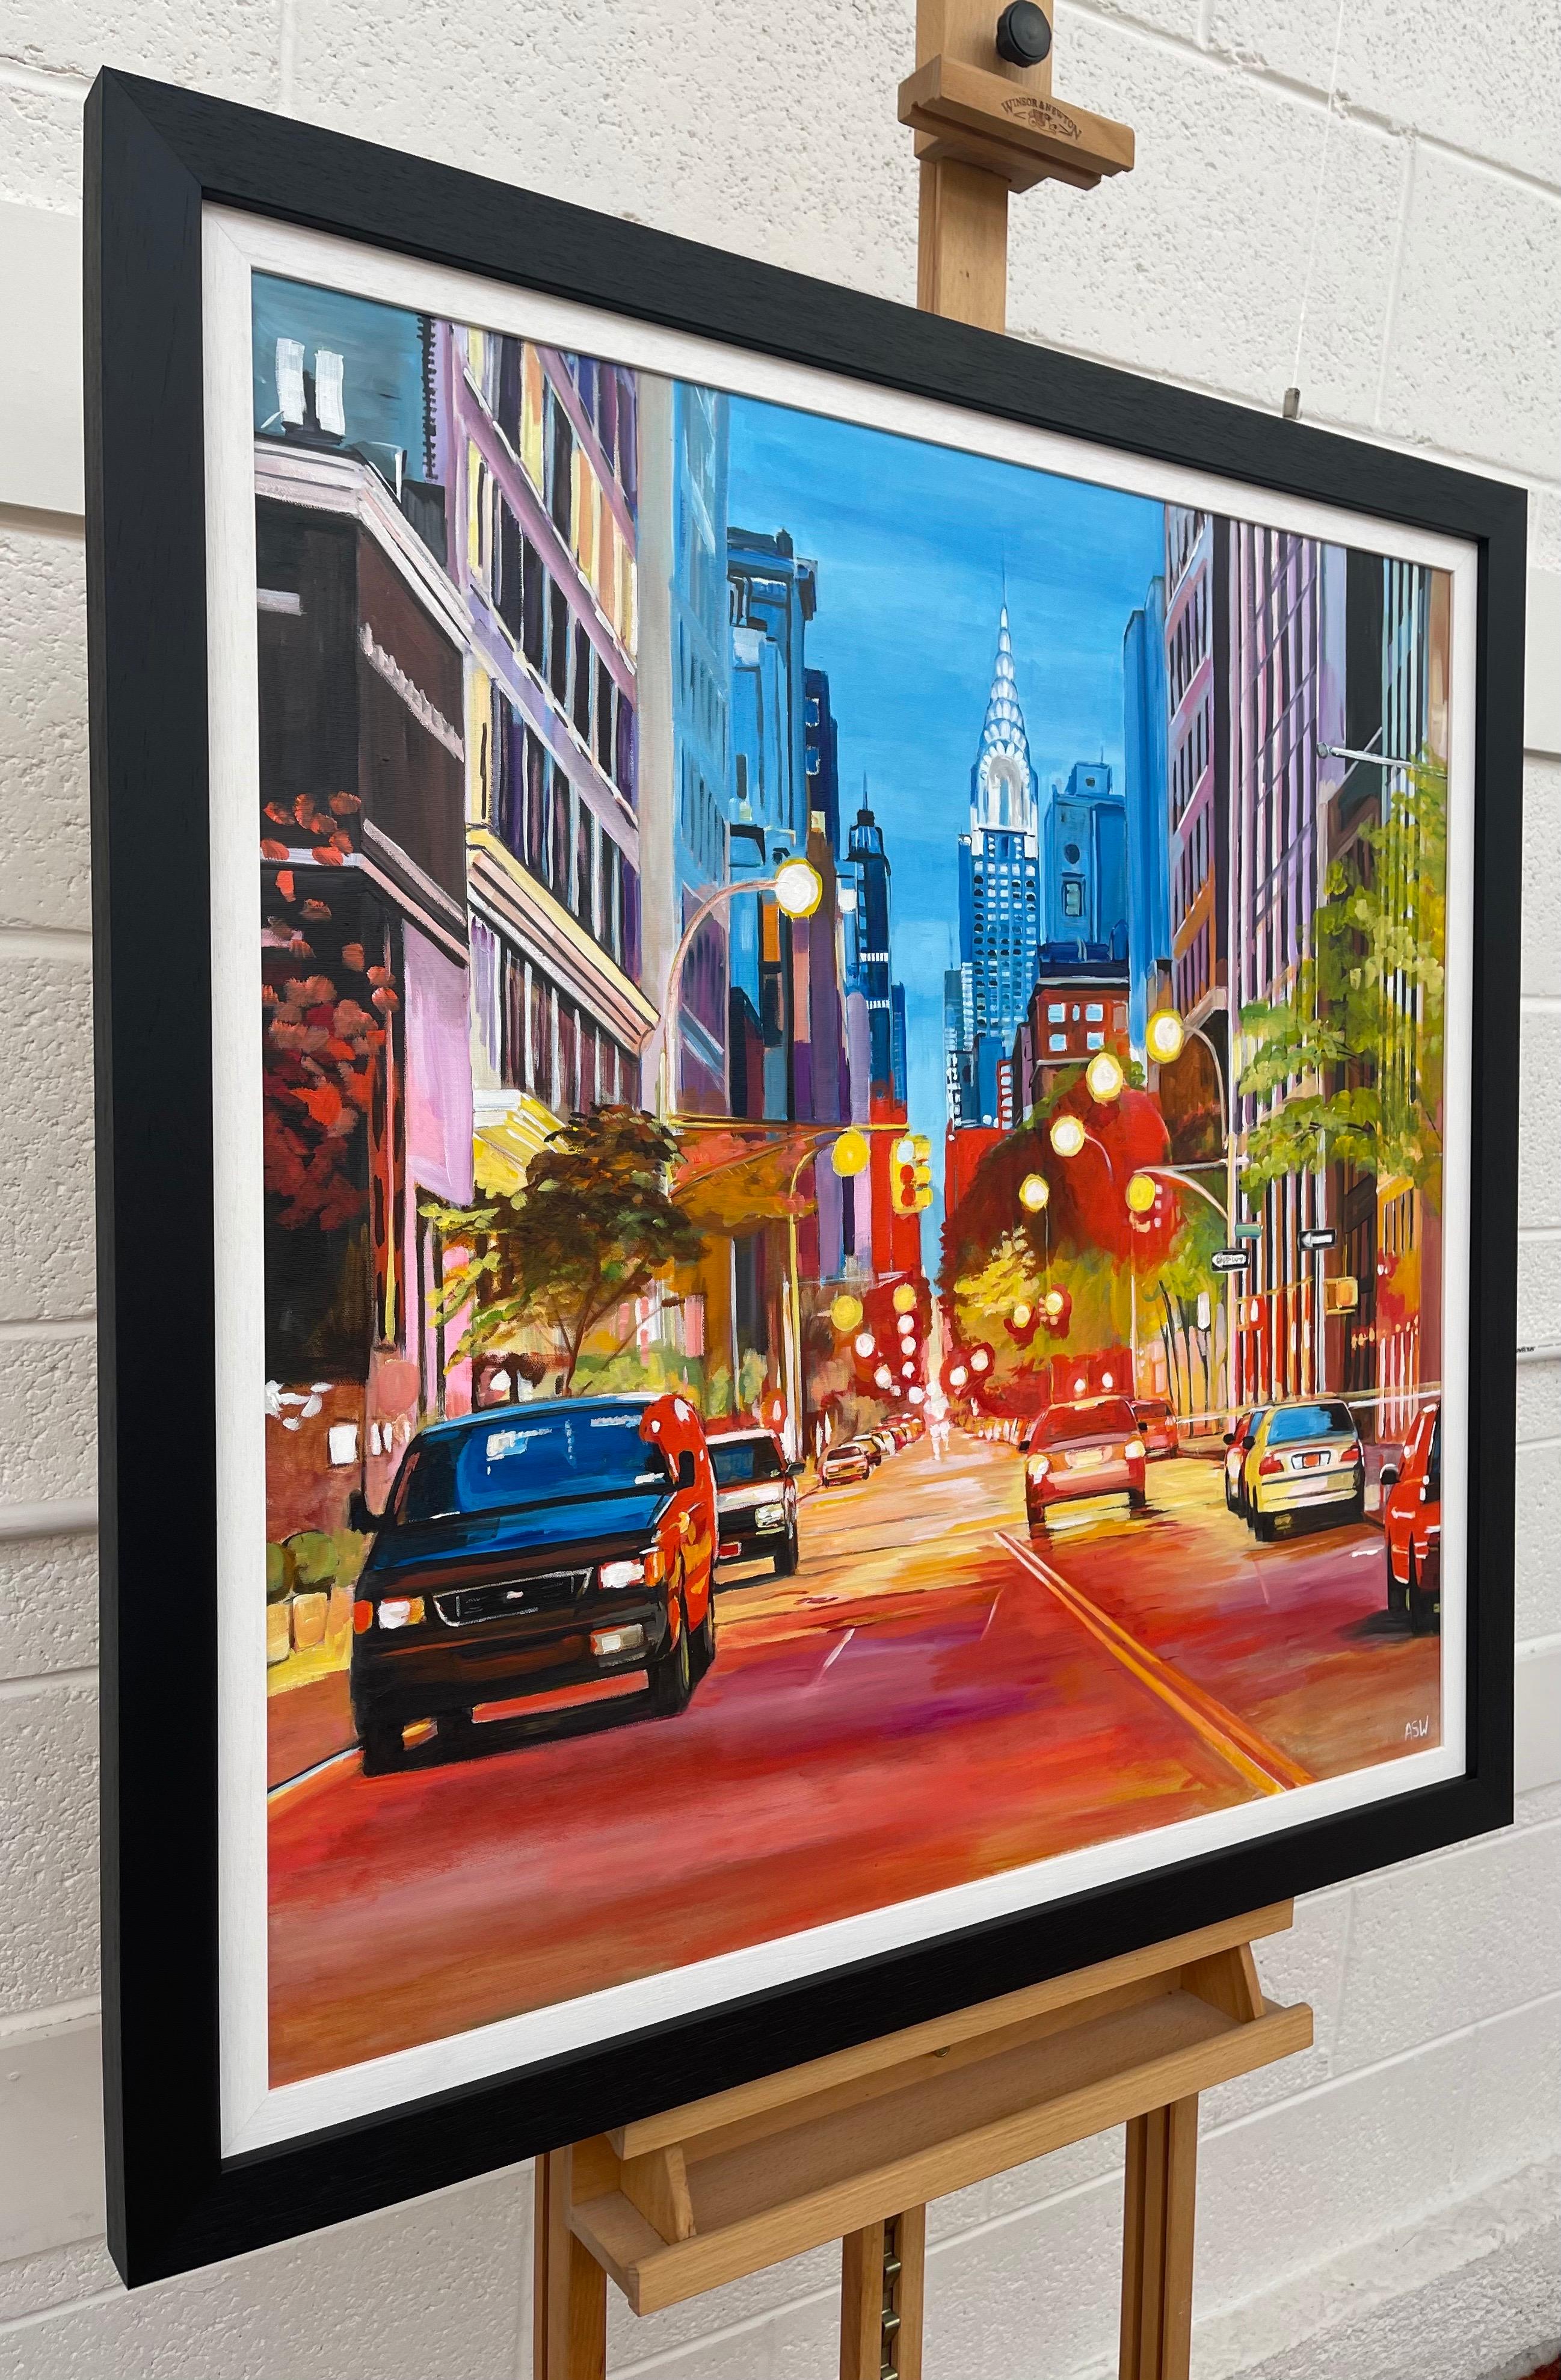 Gemälde des Chrysler Buildings in New York City von der zeitgenössischen britischen Künstlerin Angela Wakefield

Kunst misst 31,5 x 31,5 Zoll 
Rahmen misst 36 x 36 Zoll 

Angela Wakefield war zweimal auf dem Titelblatt von 